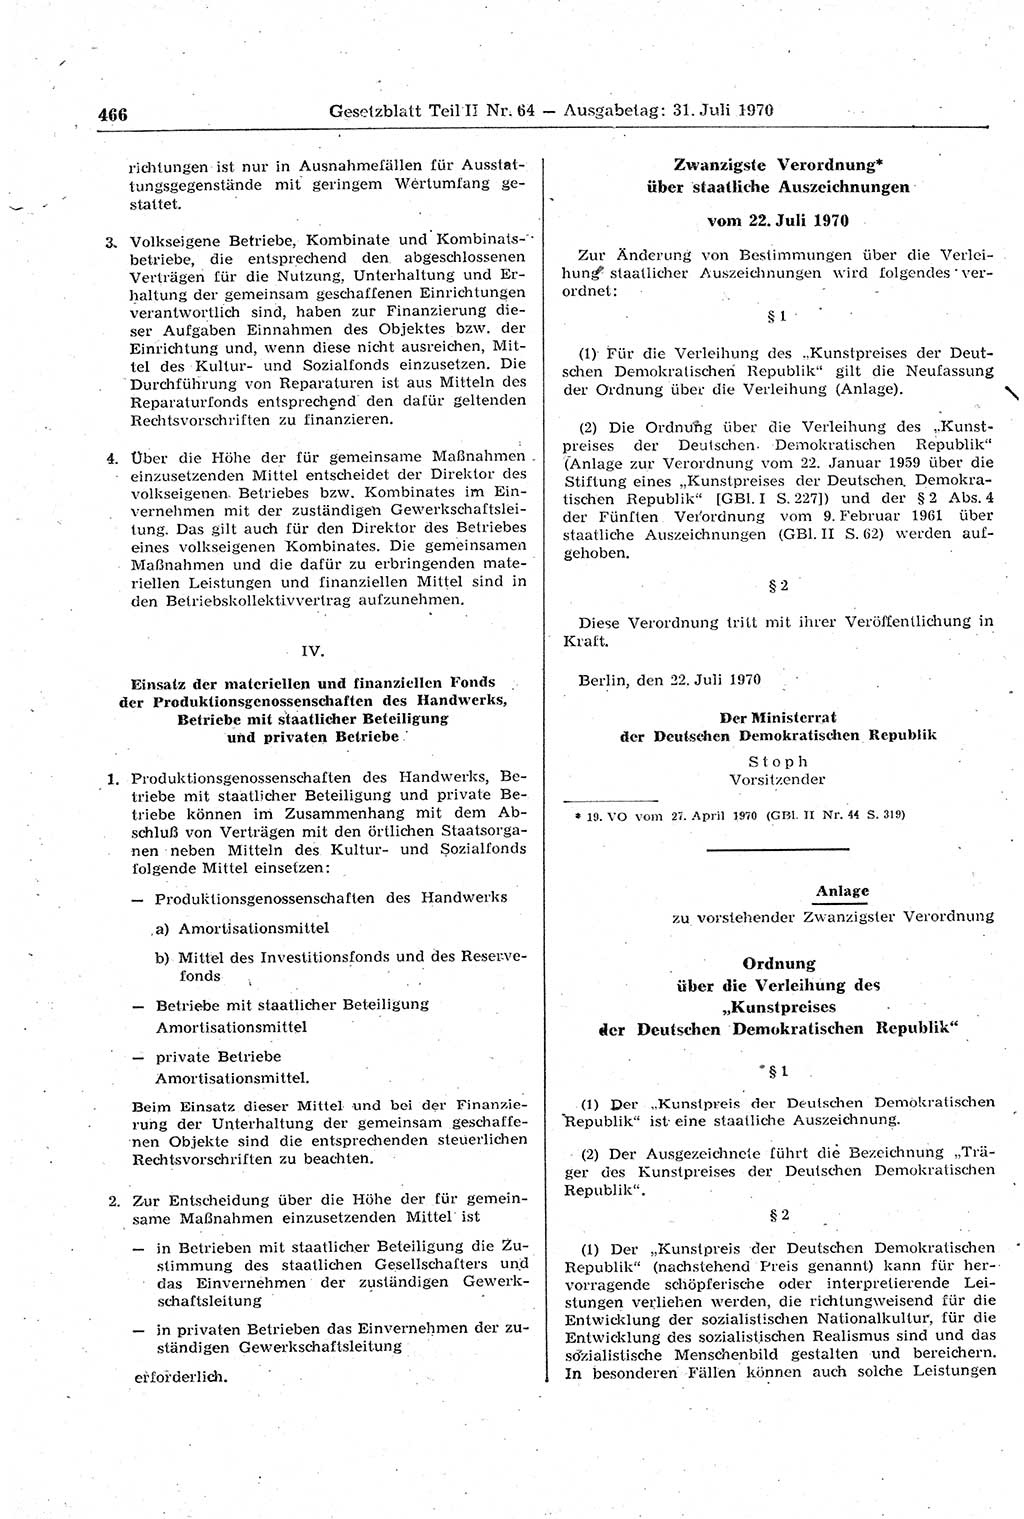 Gesetzblatt (GBl.) der Deutschen Demokratischen Republik (DDR) Teil ⅠⅠ 1970, Seite 466 (GBl. DDR ⅠⅠ 1970, S. 466)